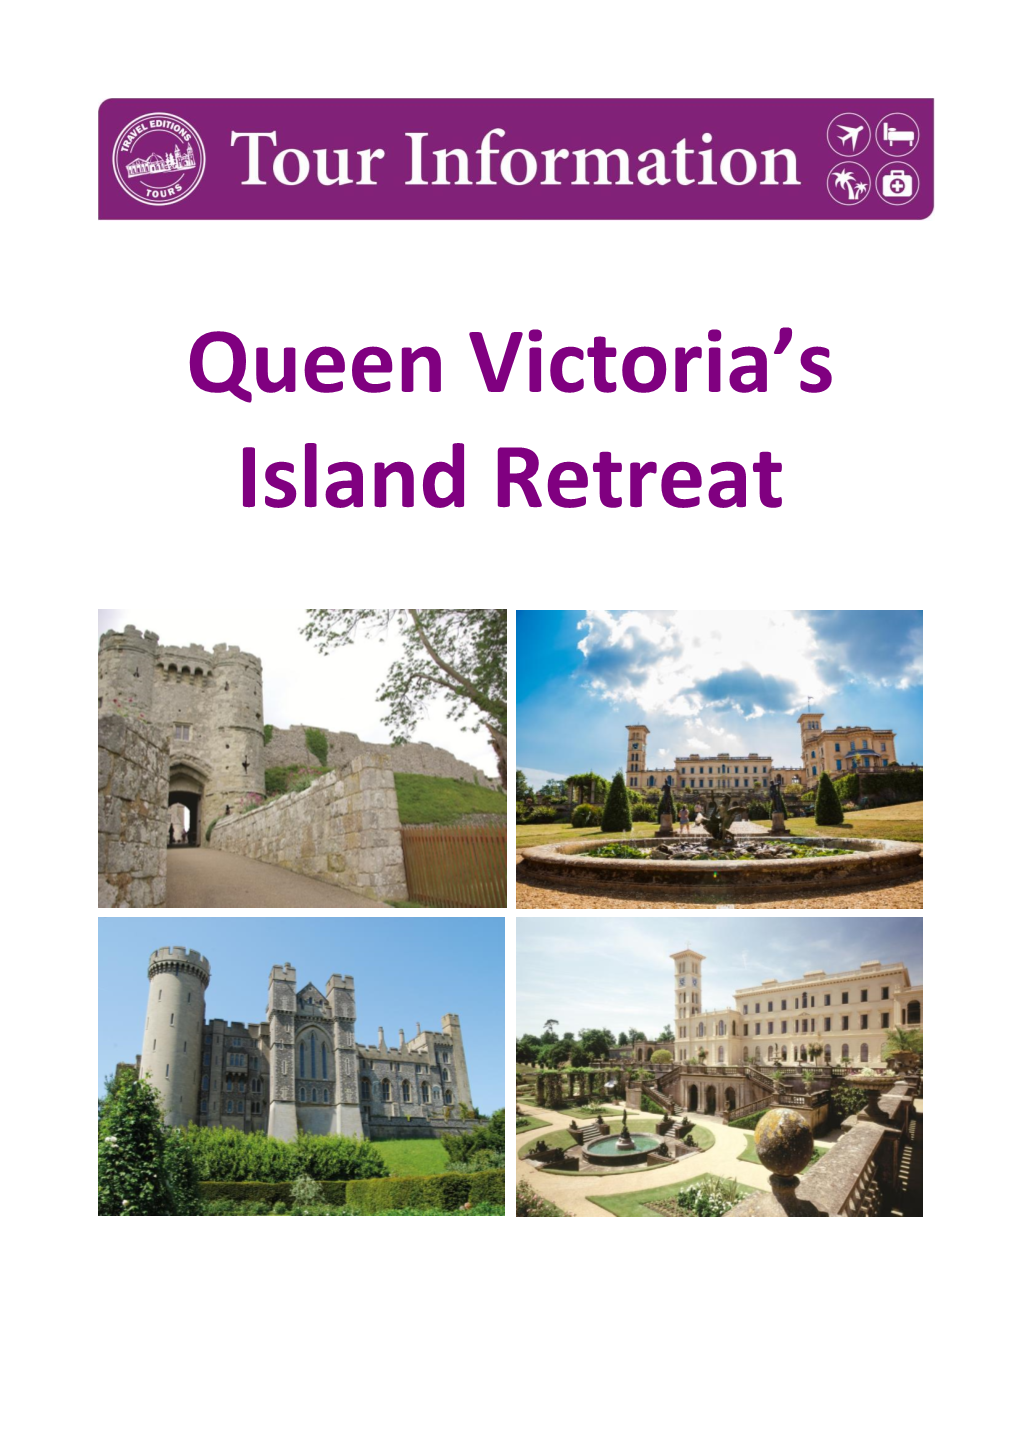 Queen Victoria's Island Retreat